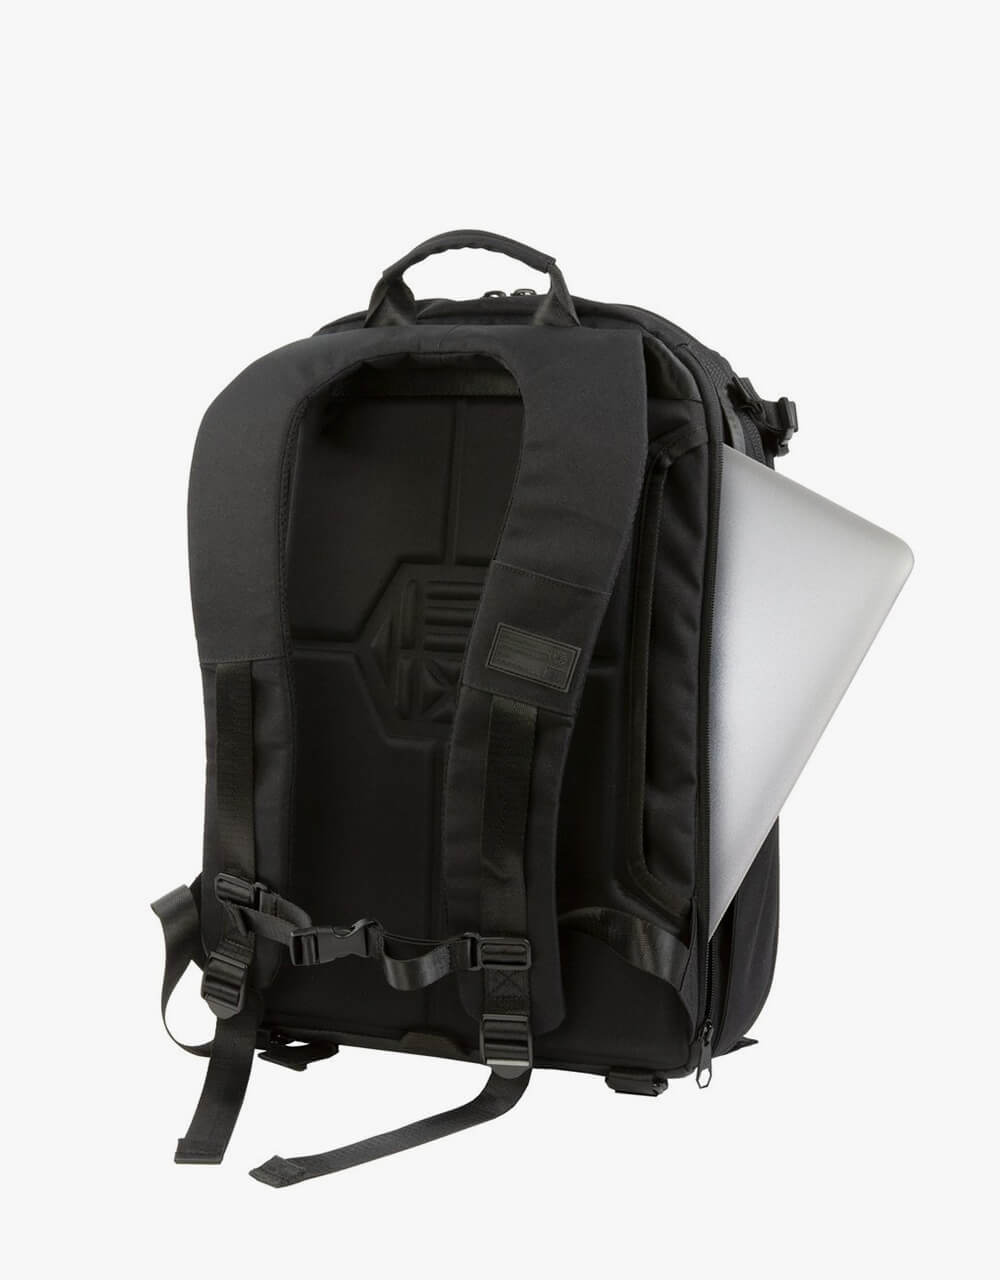 HEX Ranger Clamshell DSLR Camera Backpack - Black